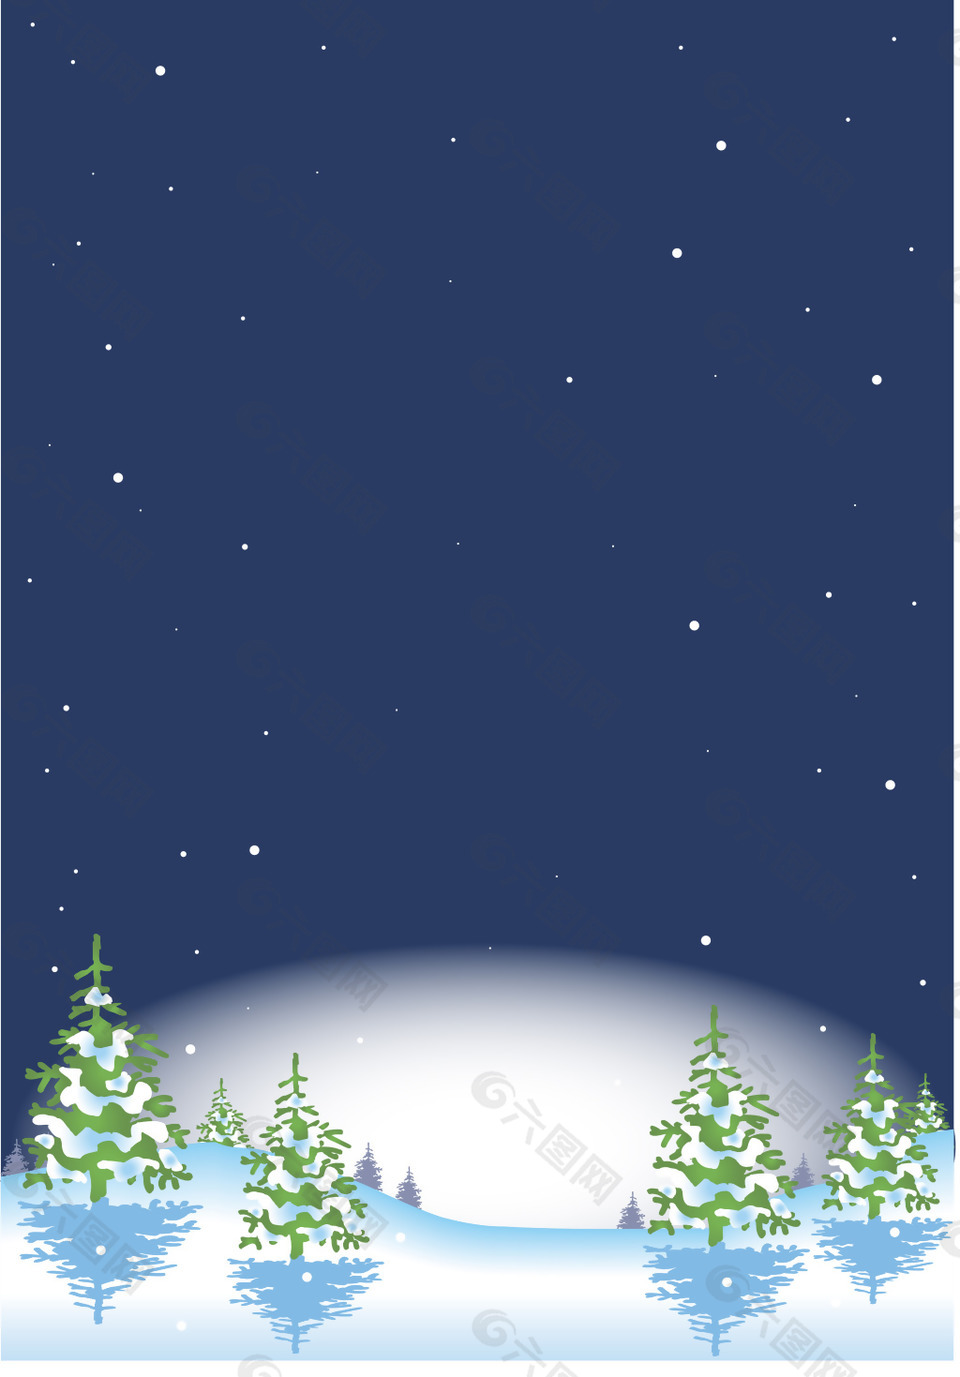 下雪夜晚矢量海报背景素材背景素材免费下载 图片编号 六图网